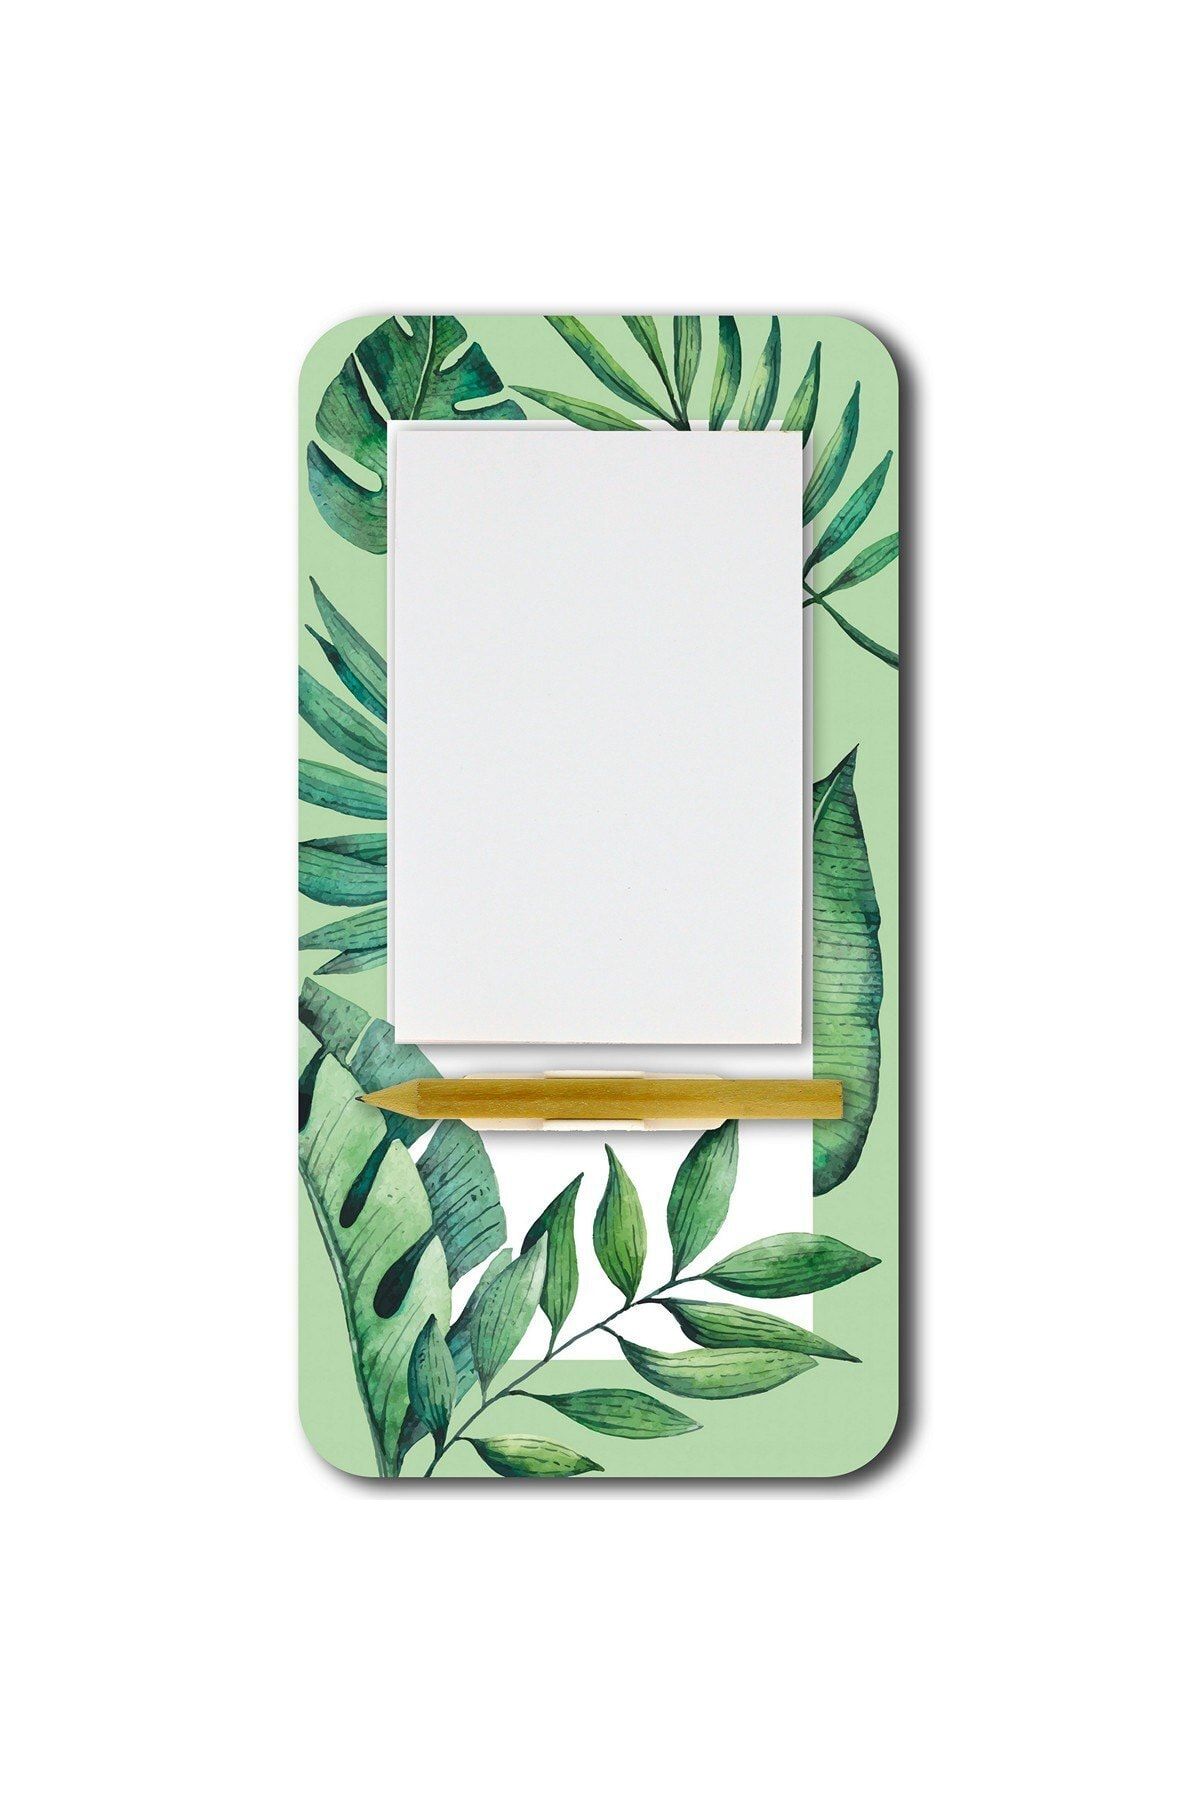 WuW Tropikal Yapraklı Magnetli Kalemli Notluk Buzdolabı Magneti